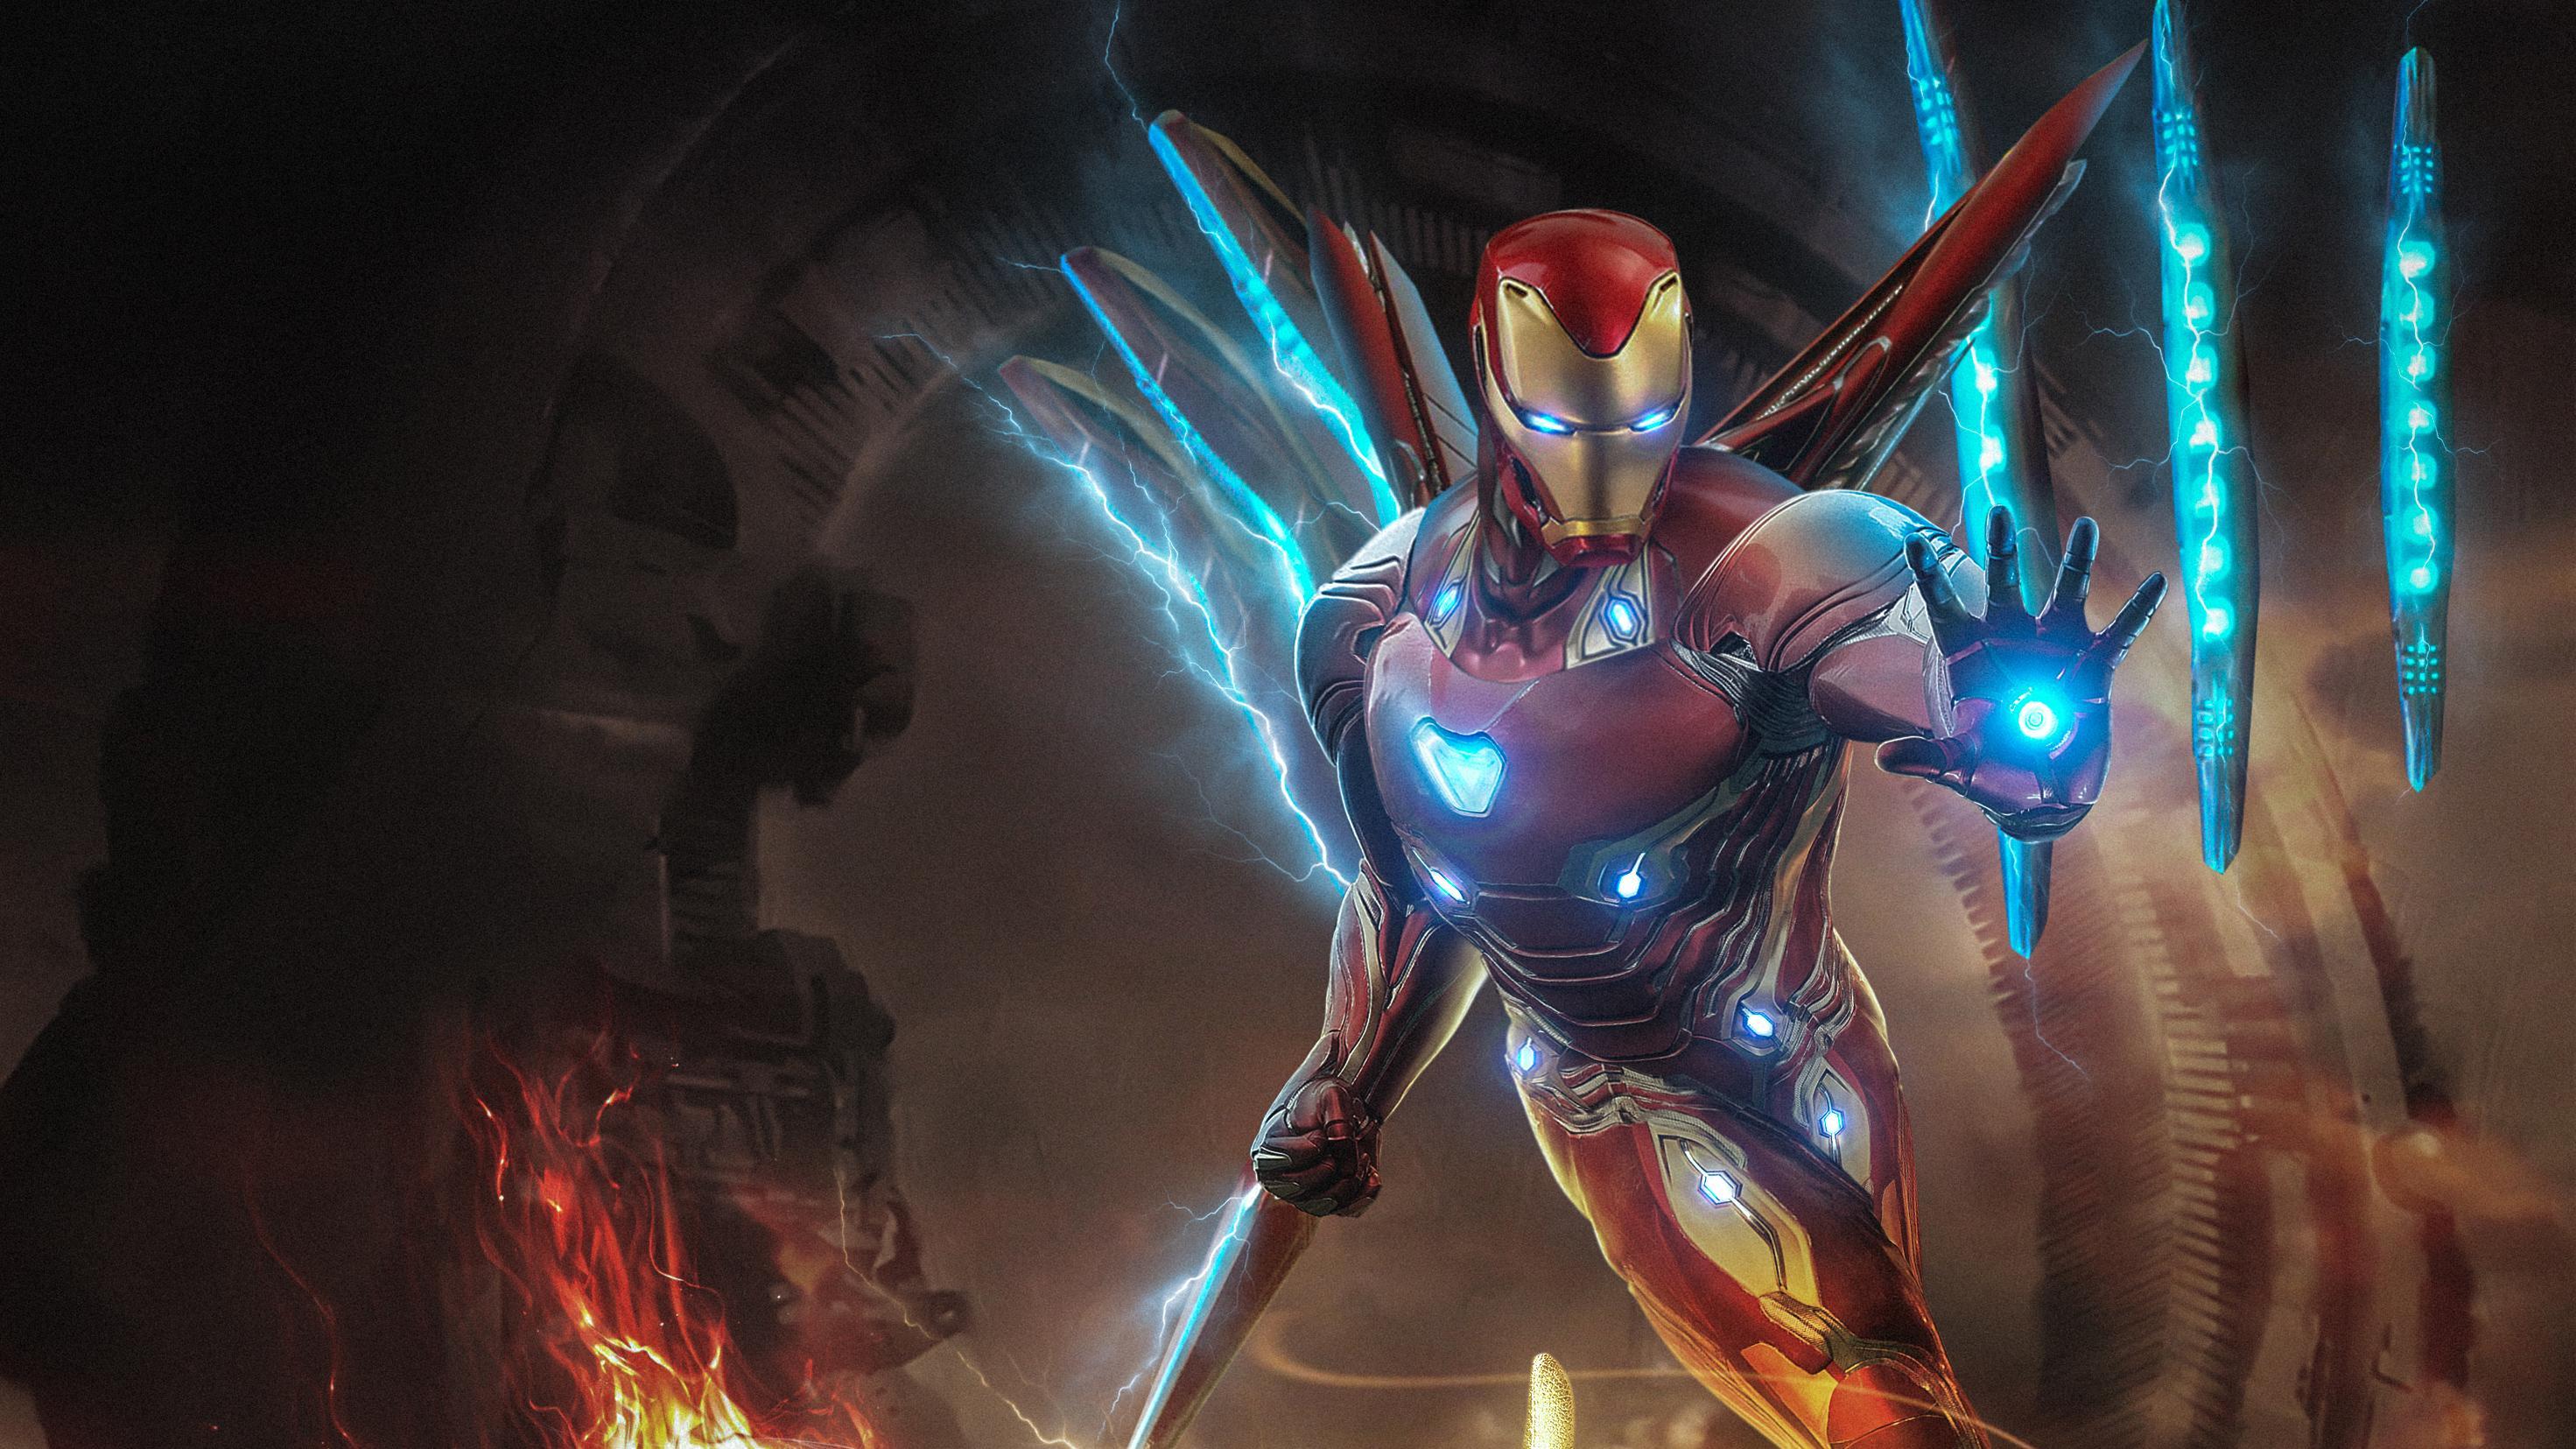 Movie Avengers Endgame The Avengers Iron Man HD Wallpaper